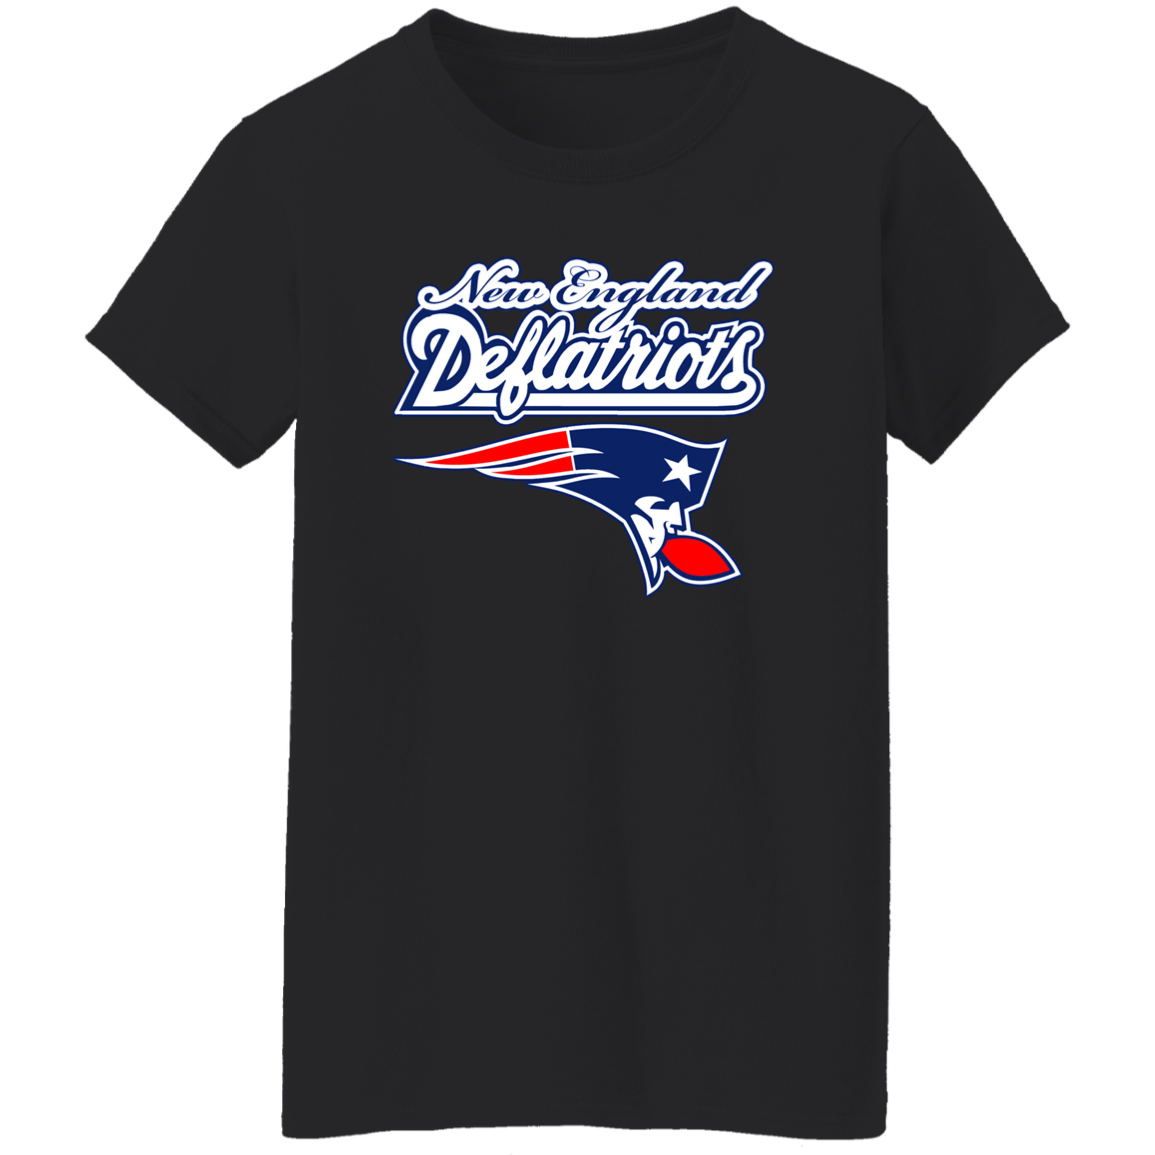 ArtichokeUSA Custom Design. New England Deflatriots. New England Patriots Parody. Ladies' 5.3 oz. T-Shirt